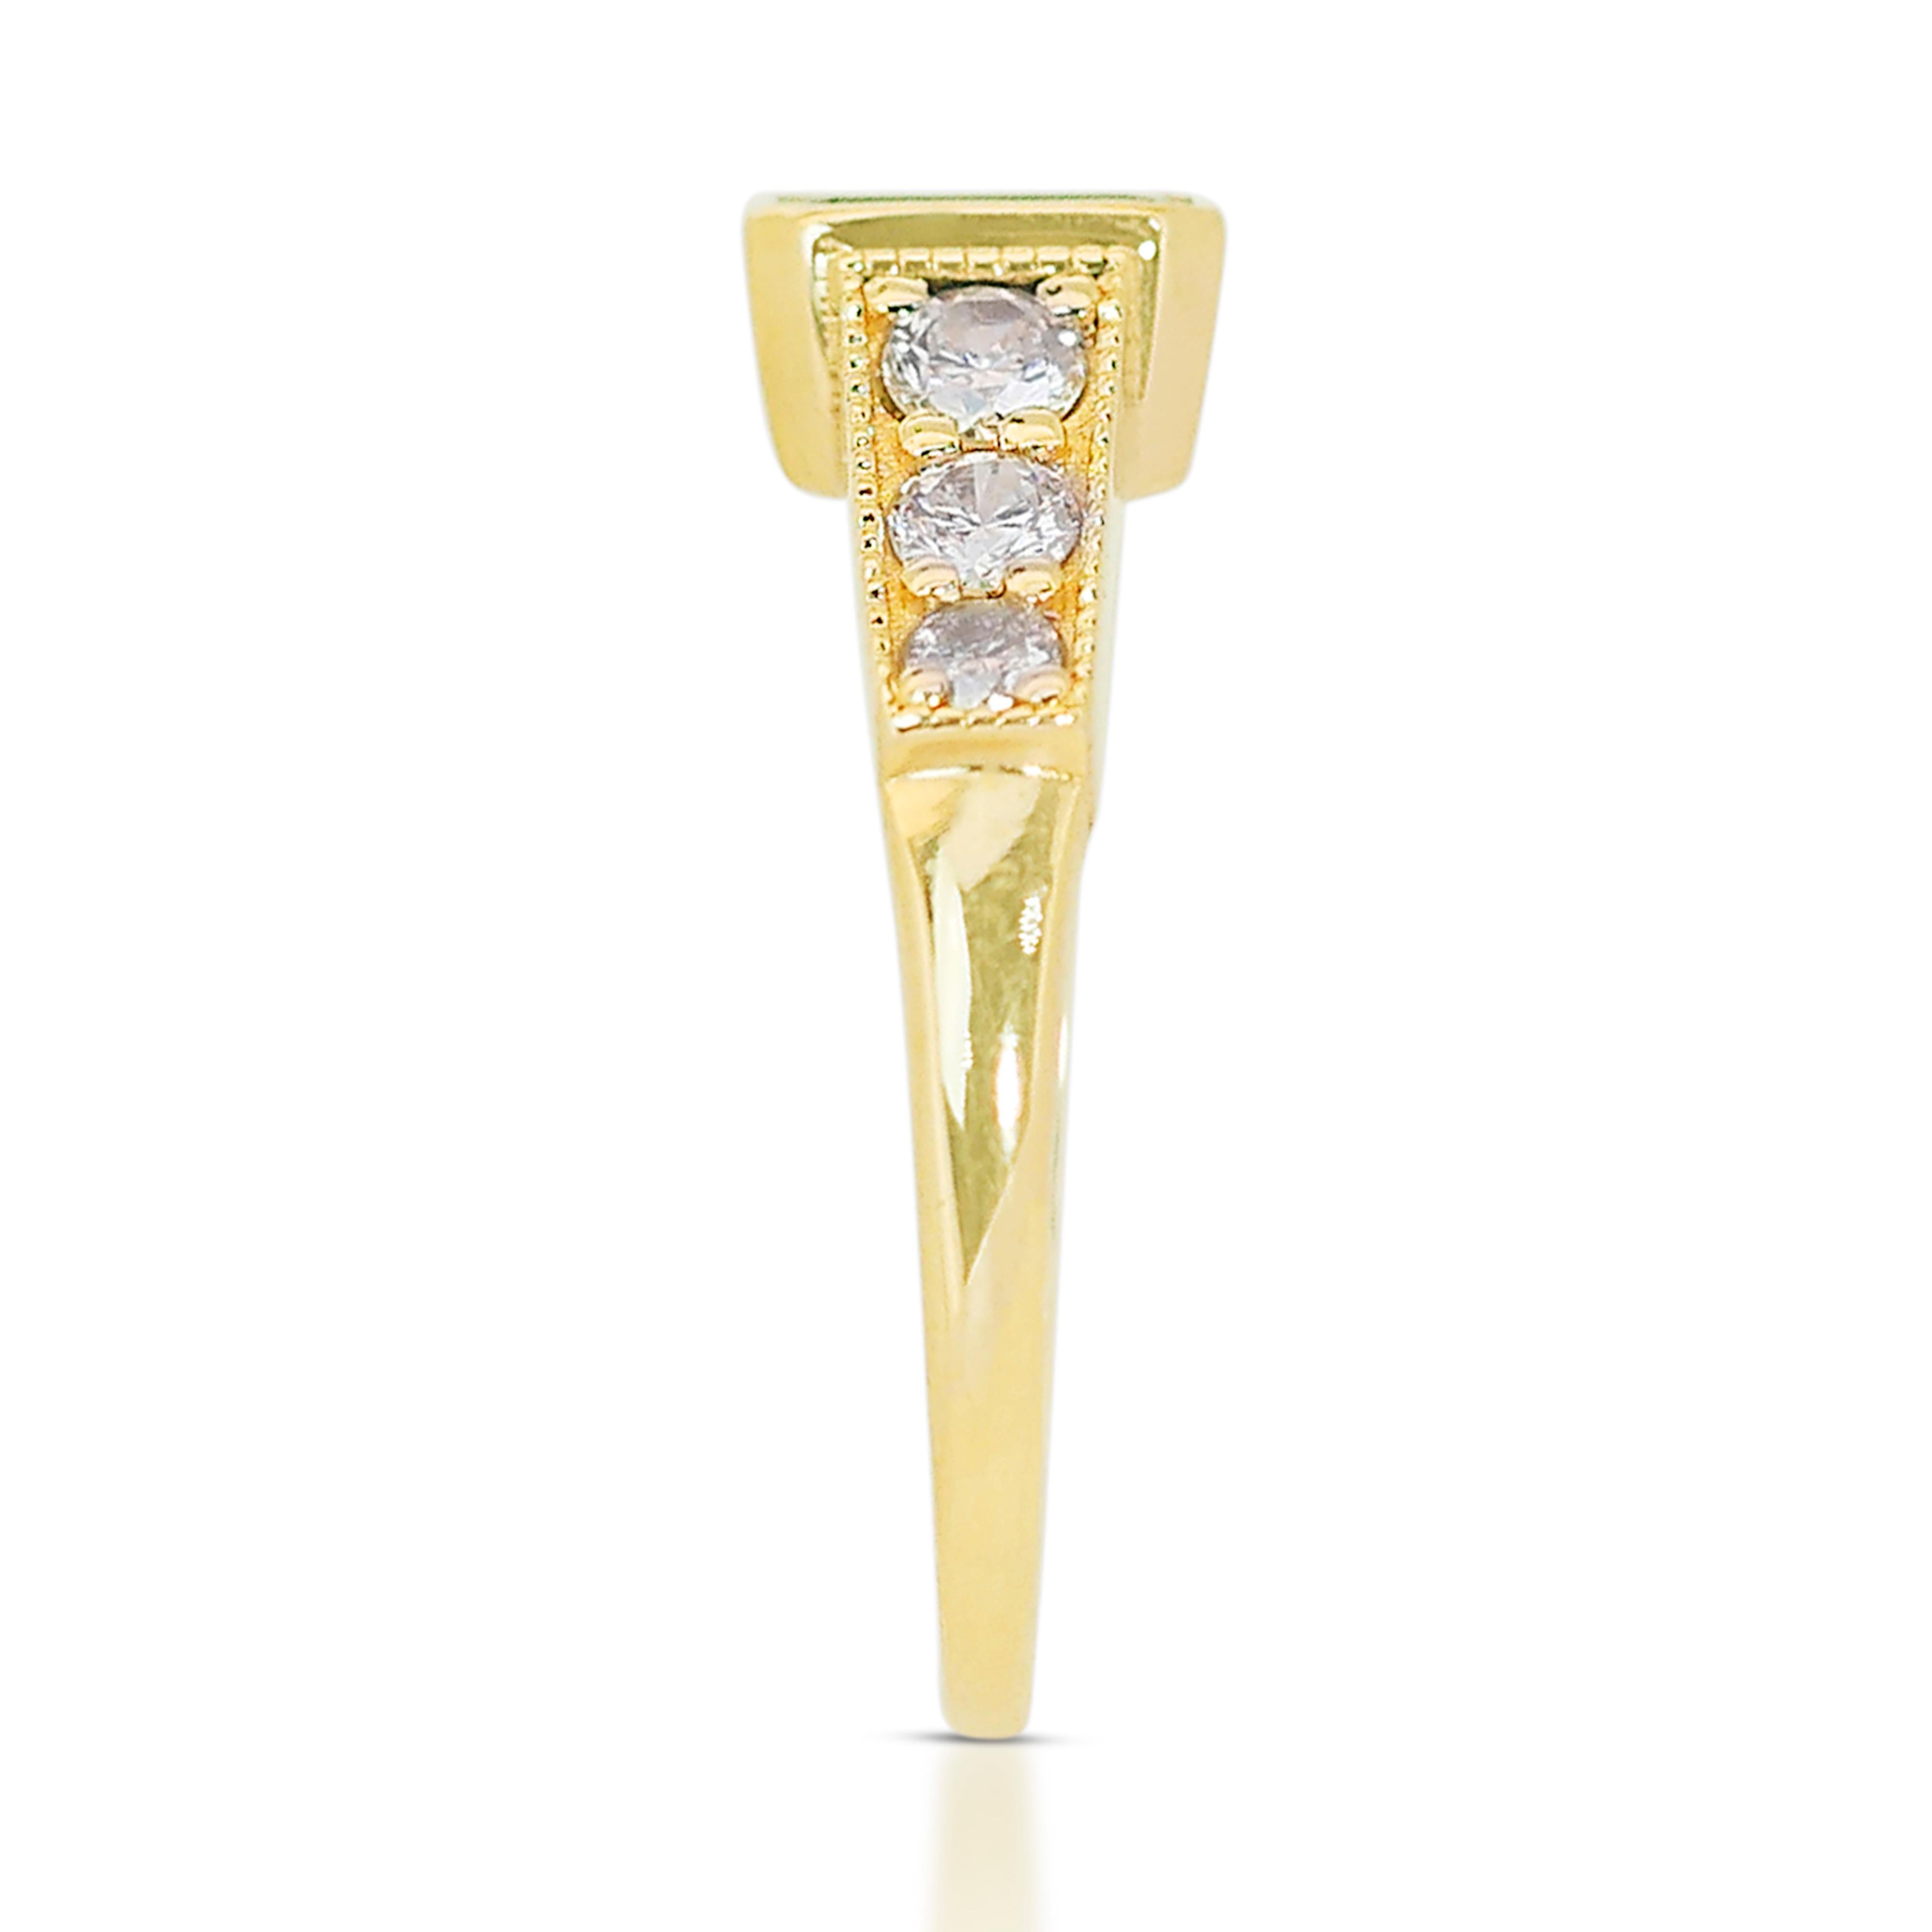 Bezaubernder 14k Gelbgold Smaragd & Diamant Pave-Ring mit/0,89 ct - IGI-zertifiziert 2